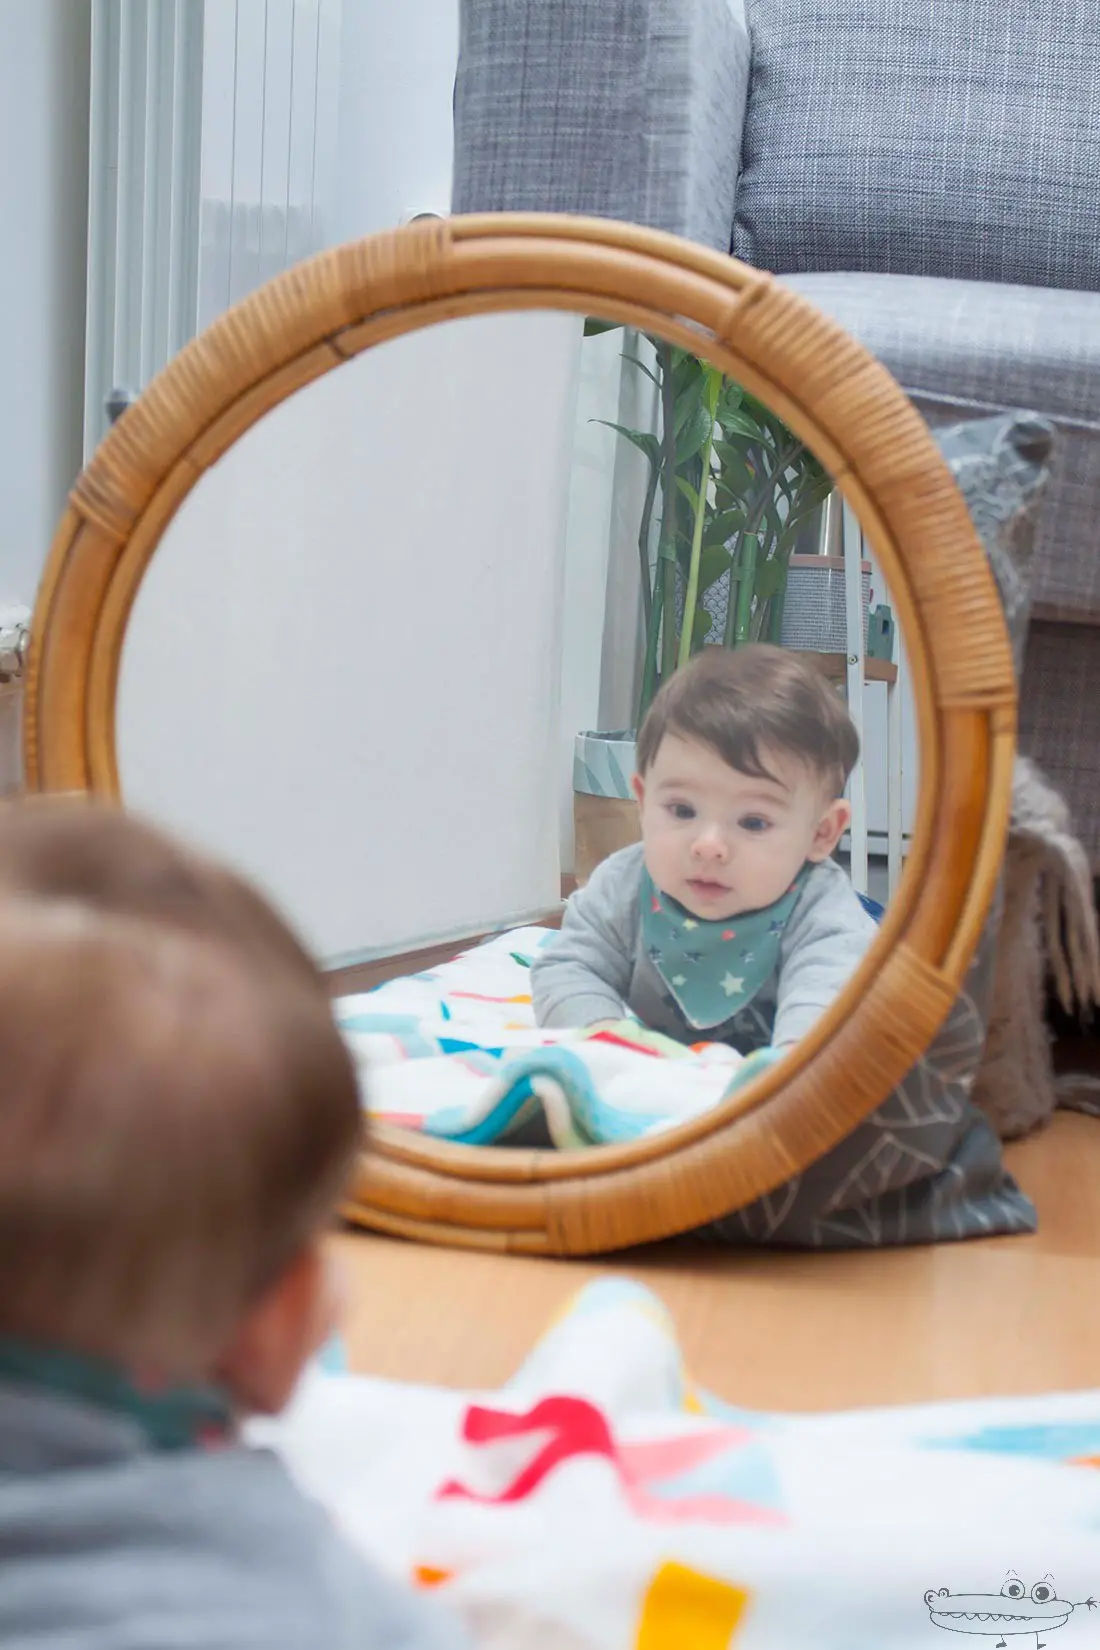 Actividad con el bebe en el espejo